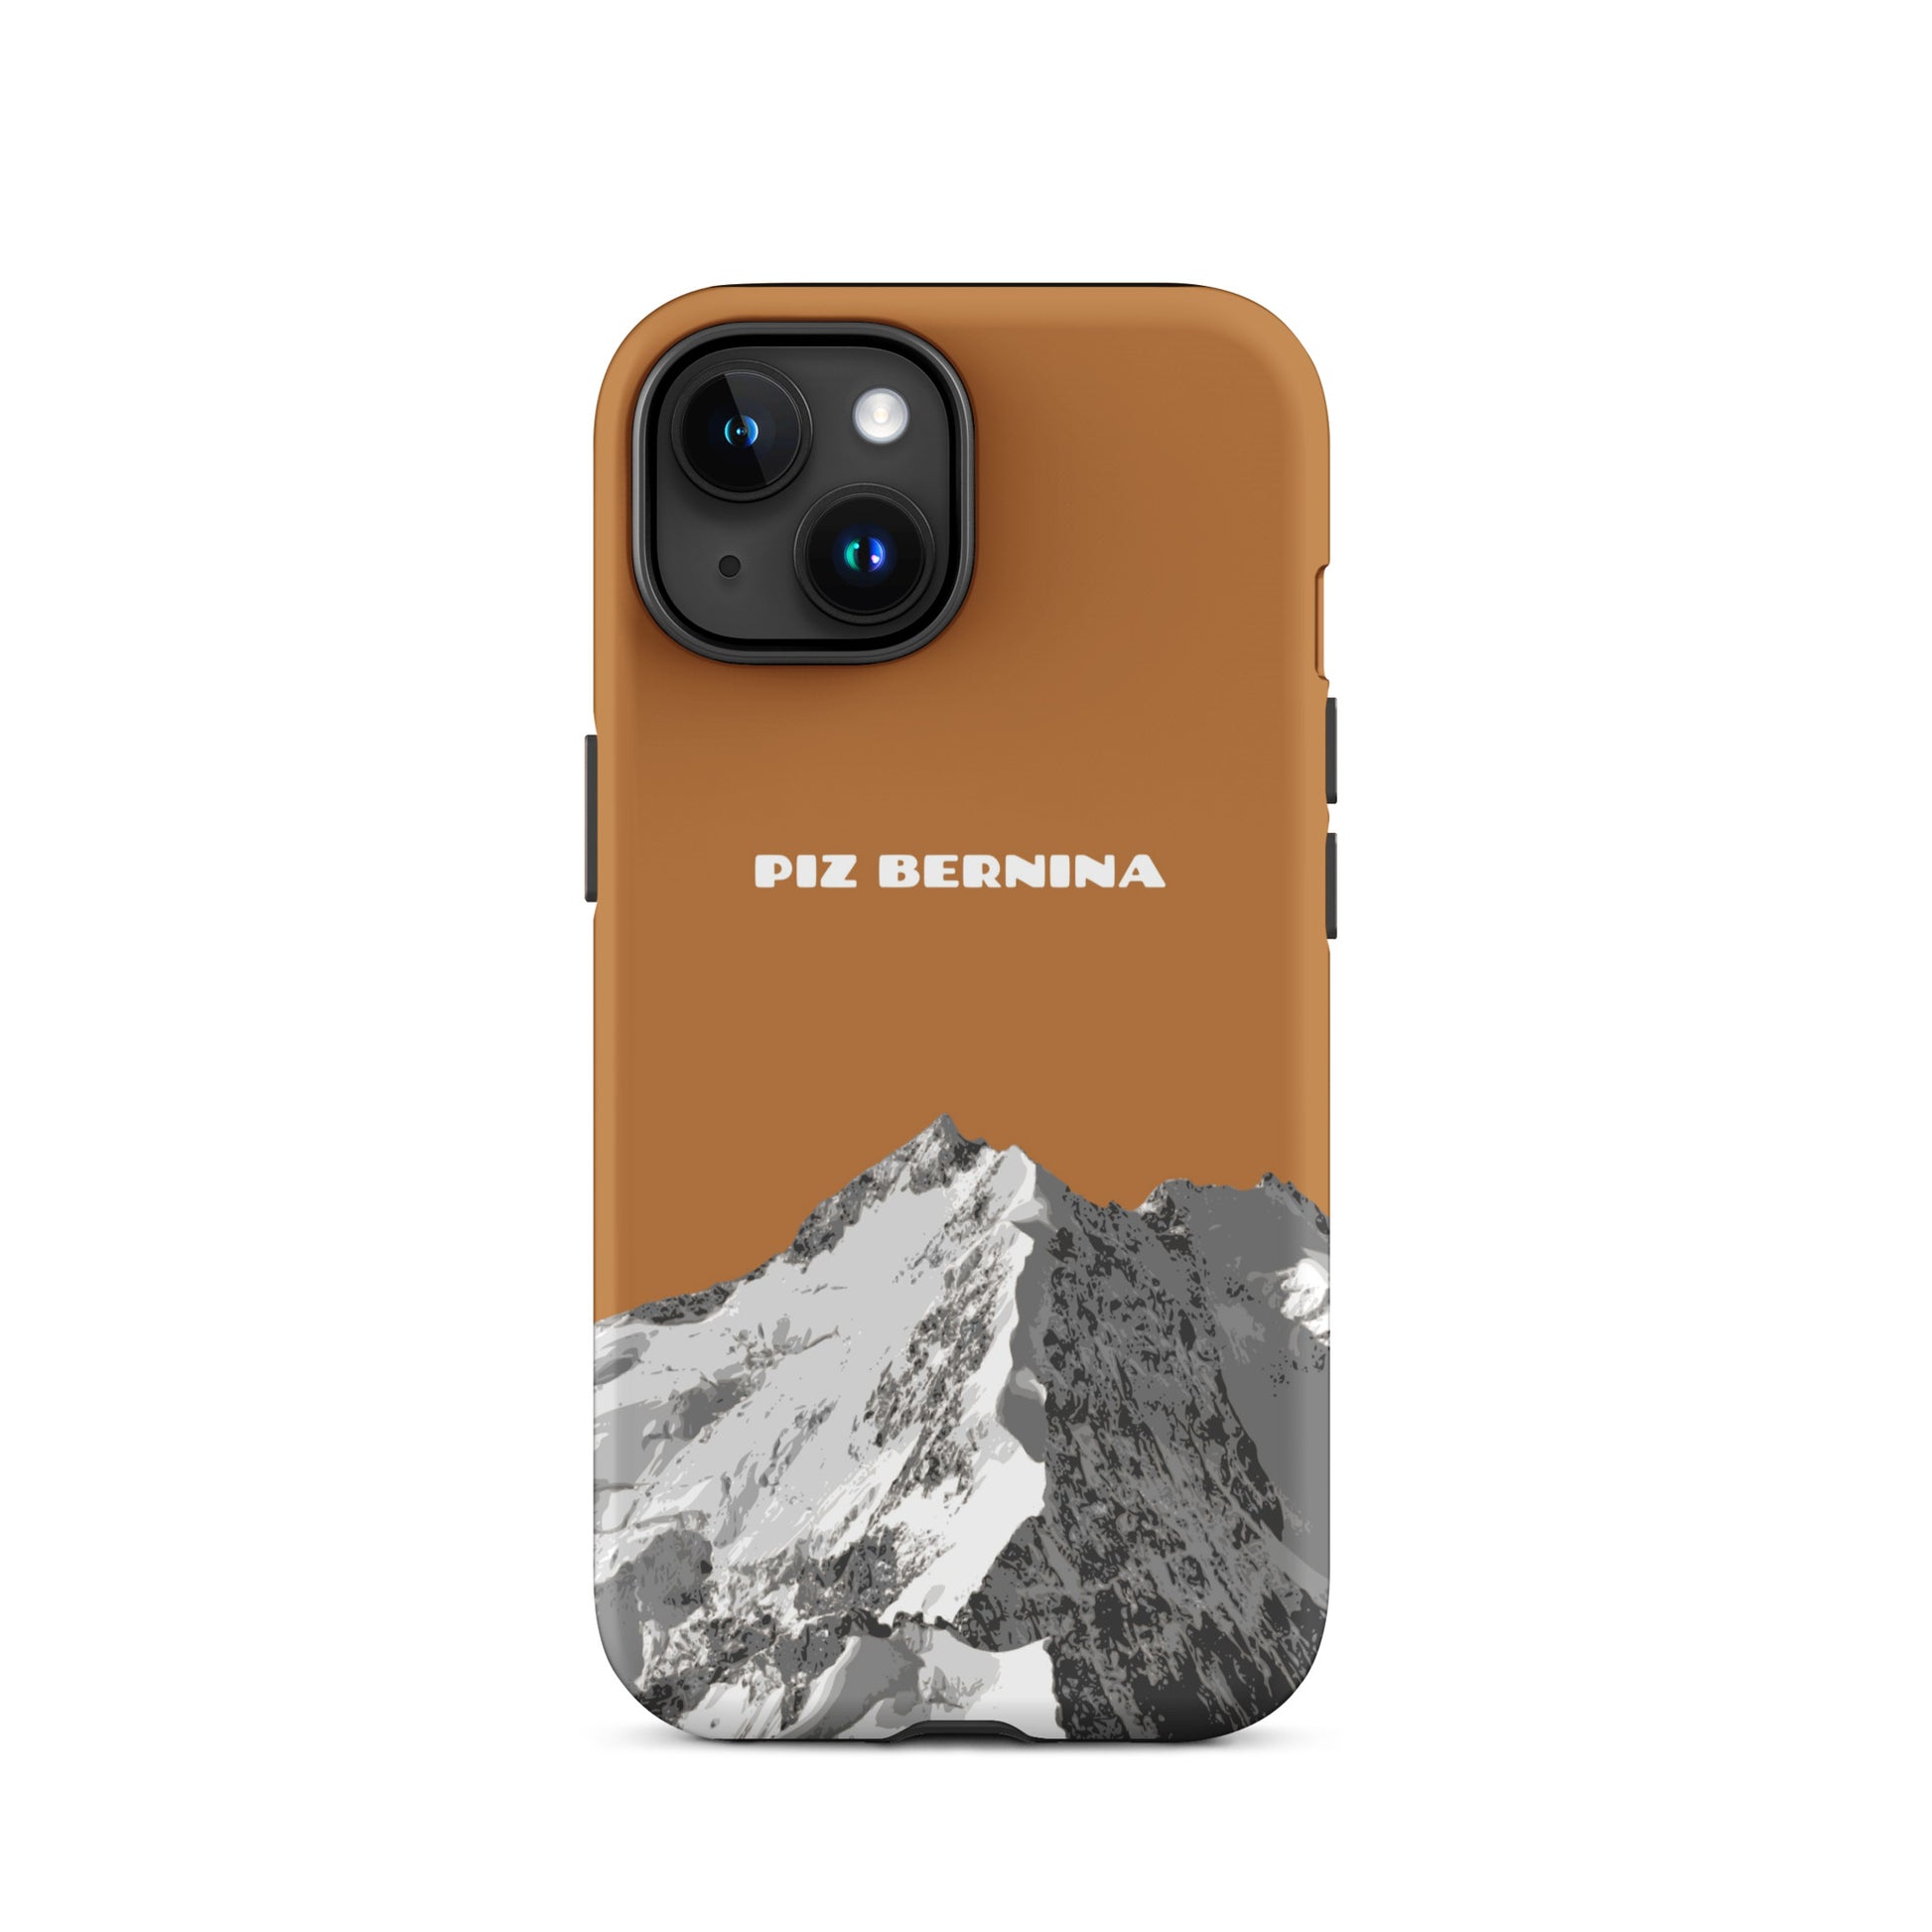 Hülle für das iPhone 15 von Apple in der Farbe Kupfer, dass den Piz Bernina in Graubünden zeigt.